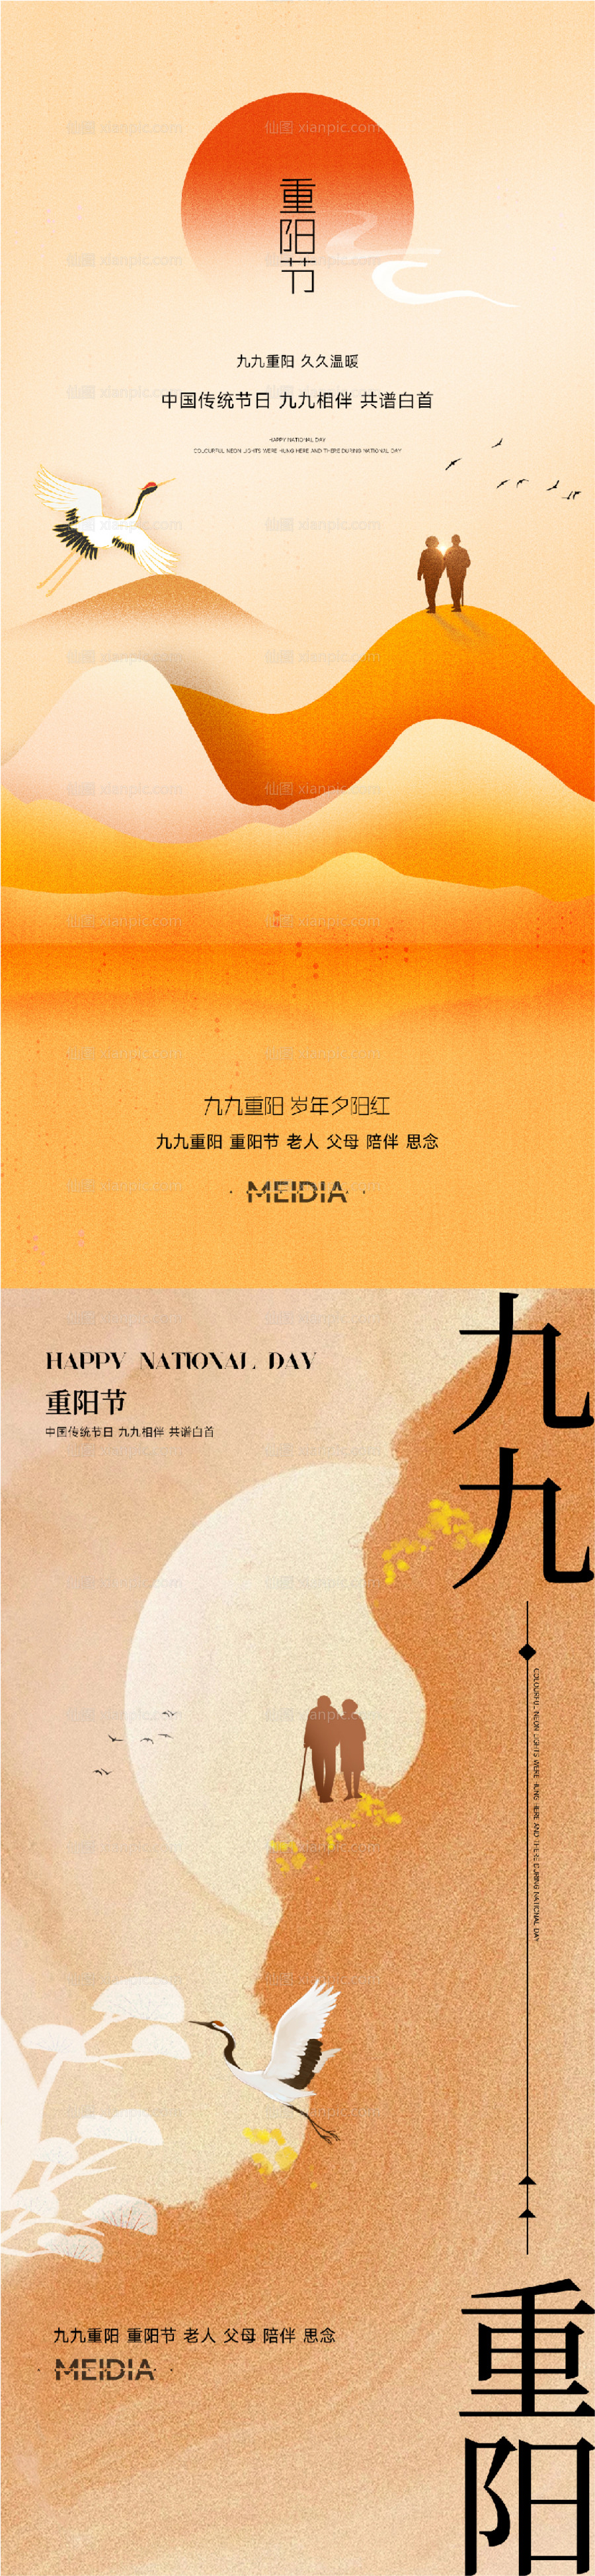 素材乐-重阳节节日海报